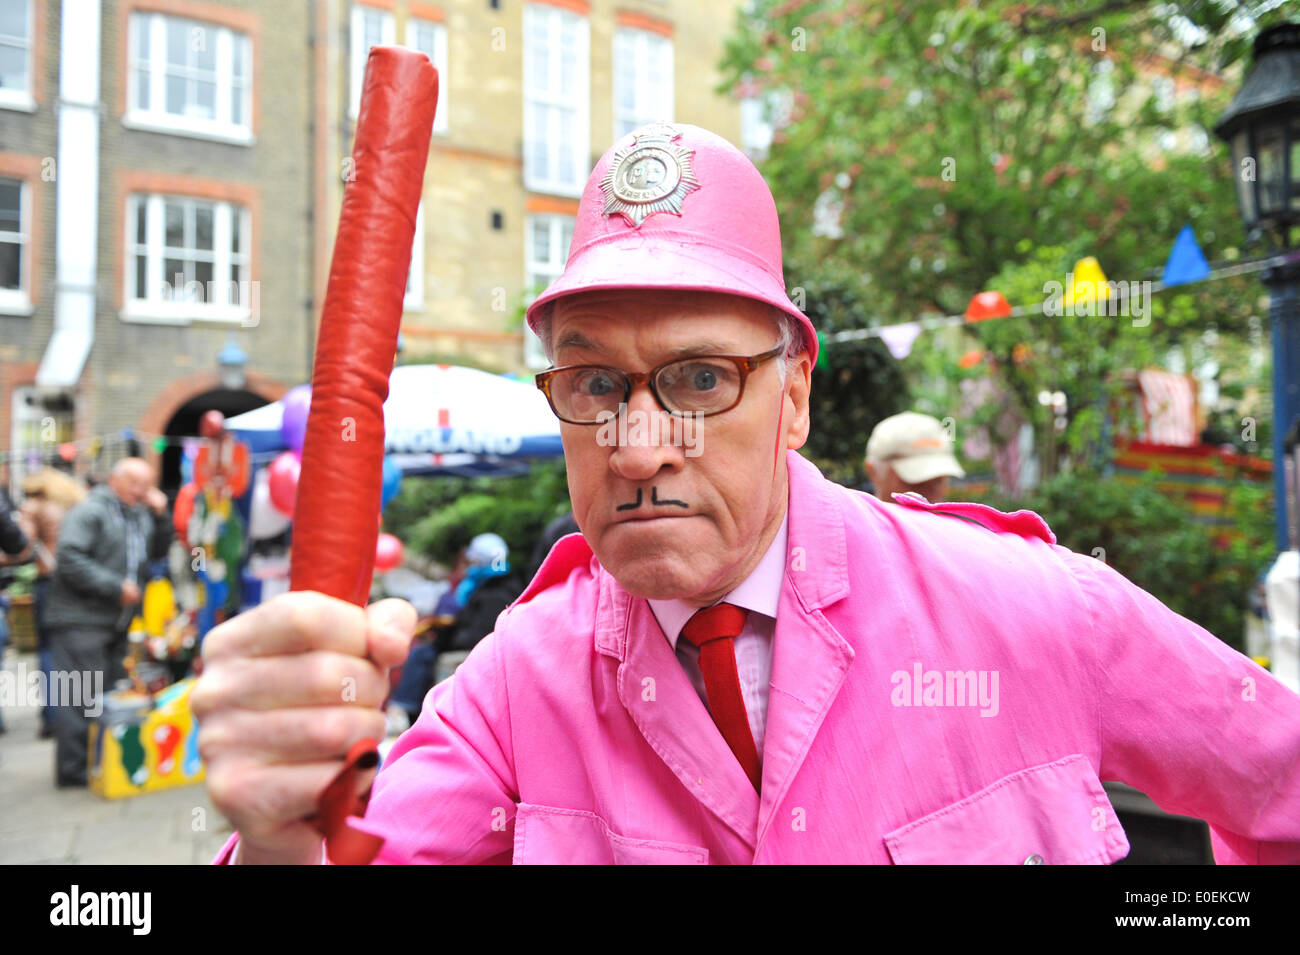 Covent Garden, Londres, Royaume-Uni. 11 mai 2014. Un policier en service au Peut Fayre à Covent Garden. Crédit : Matthieu Chattle/Alamy Live News Banque D'Images